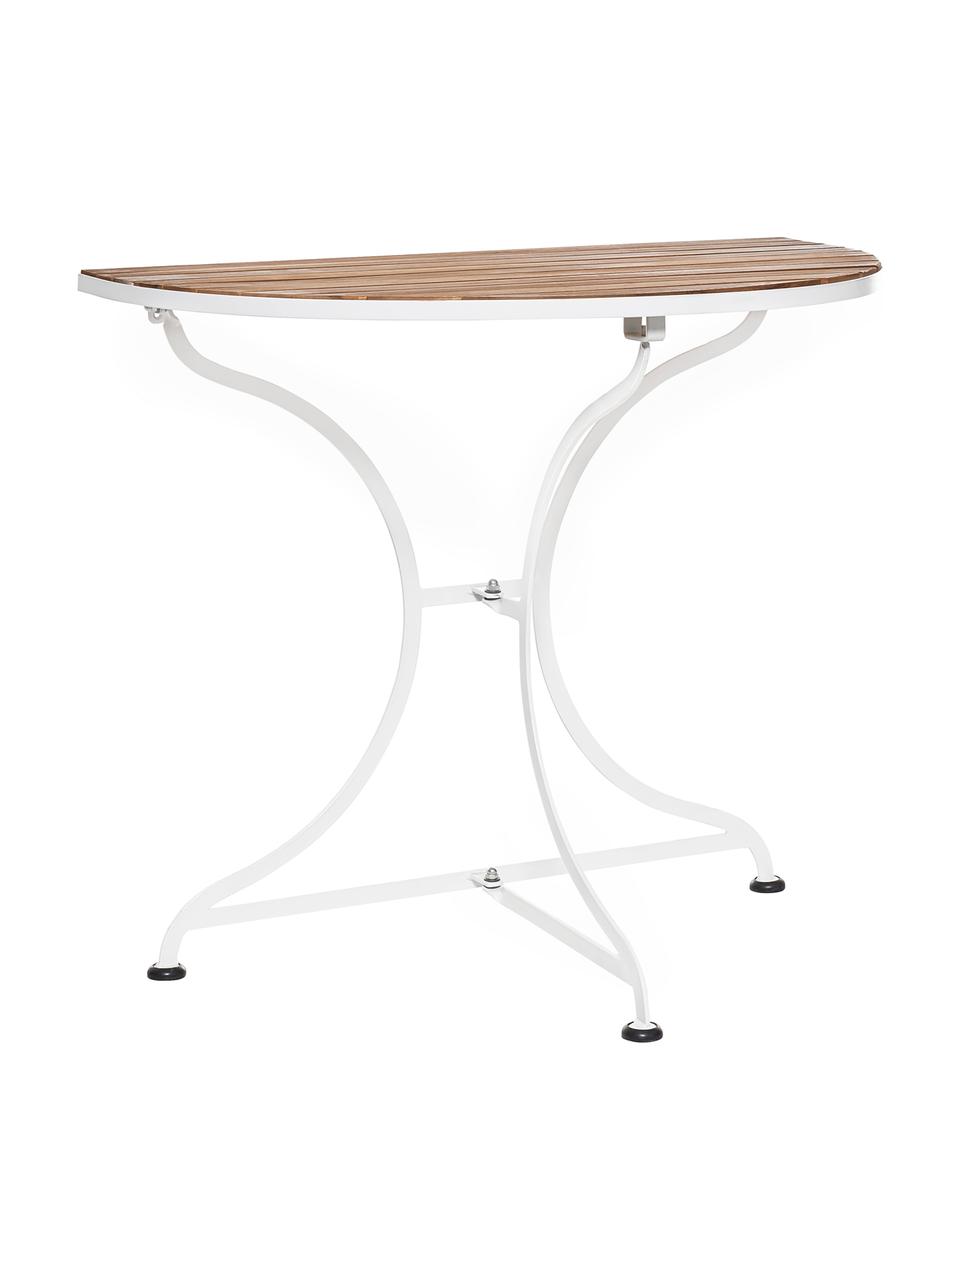 Půlkruhový balkonový stůl s dřevěnou deskou Parklife, Bílá, akátové dřevo